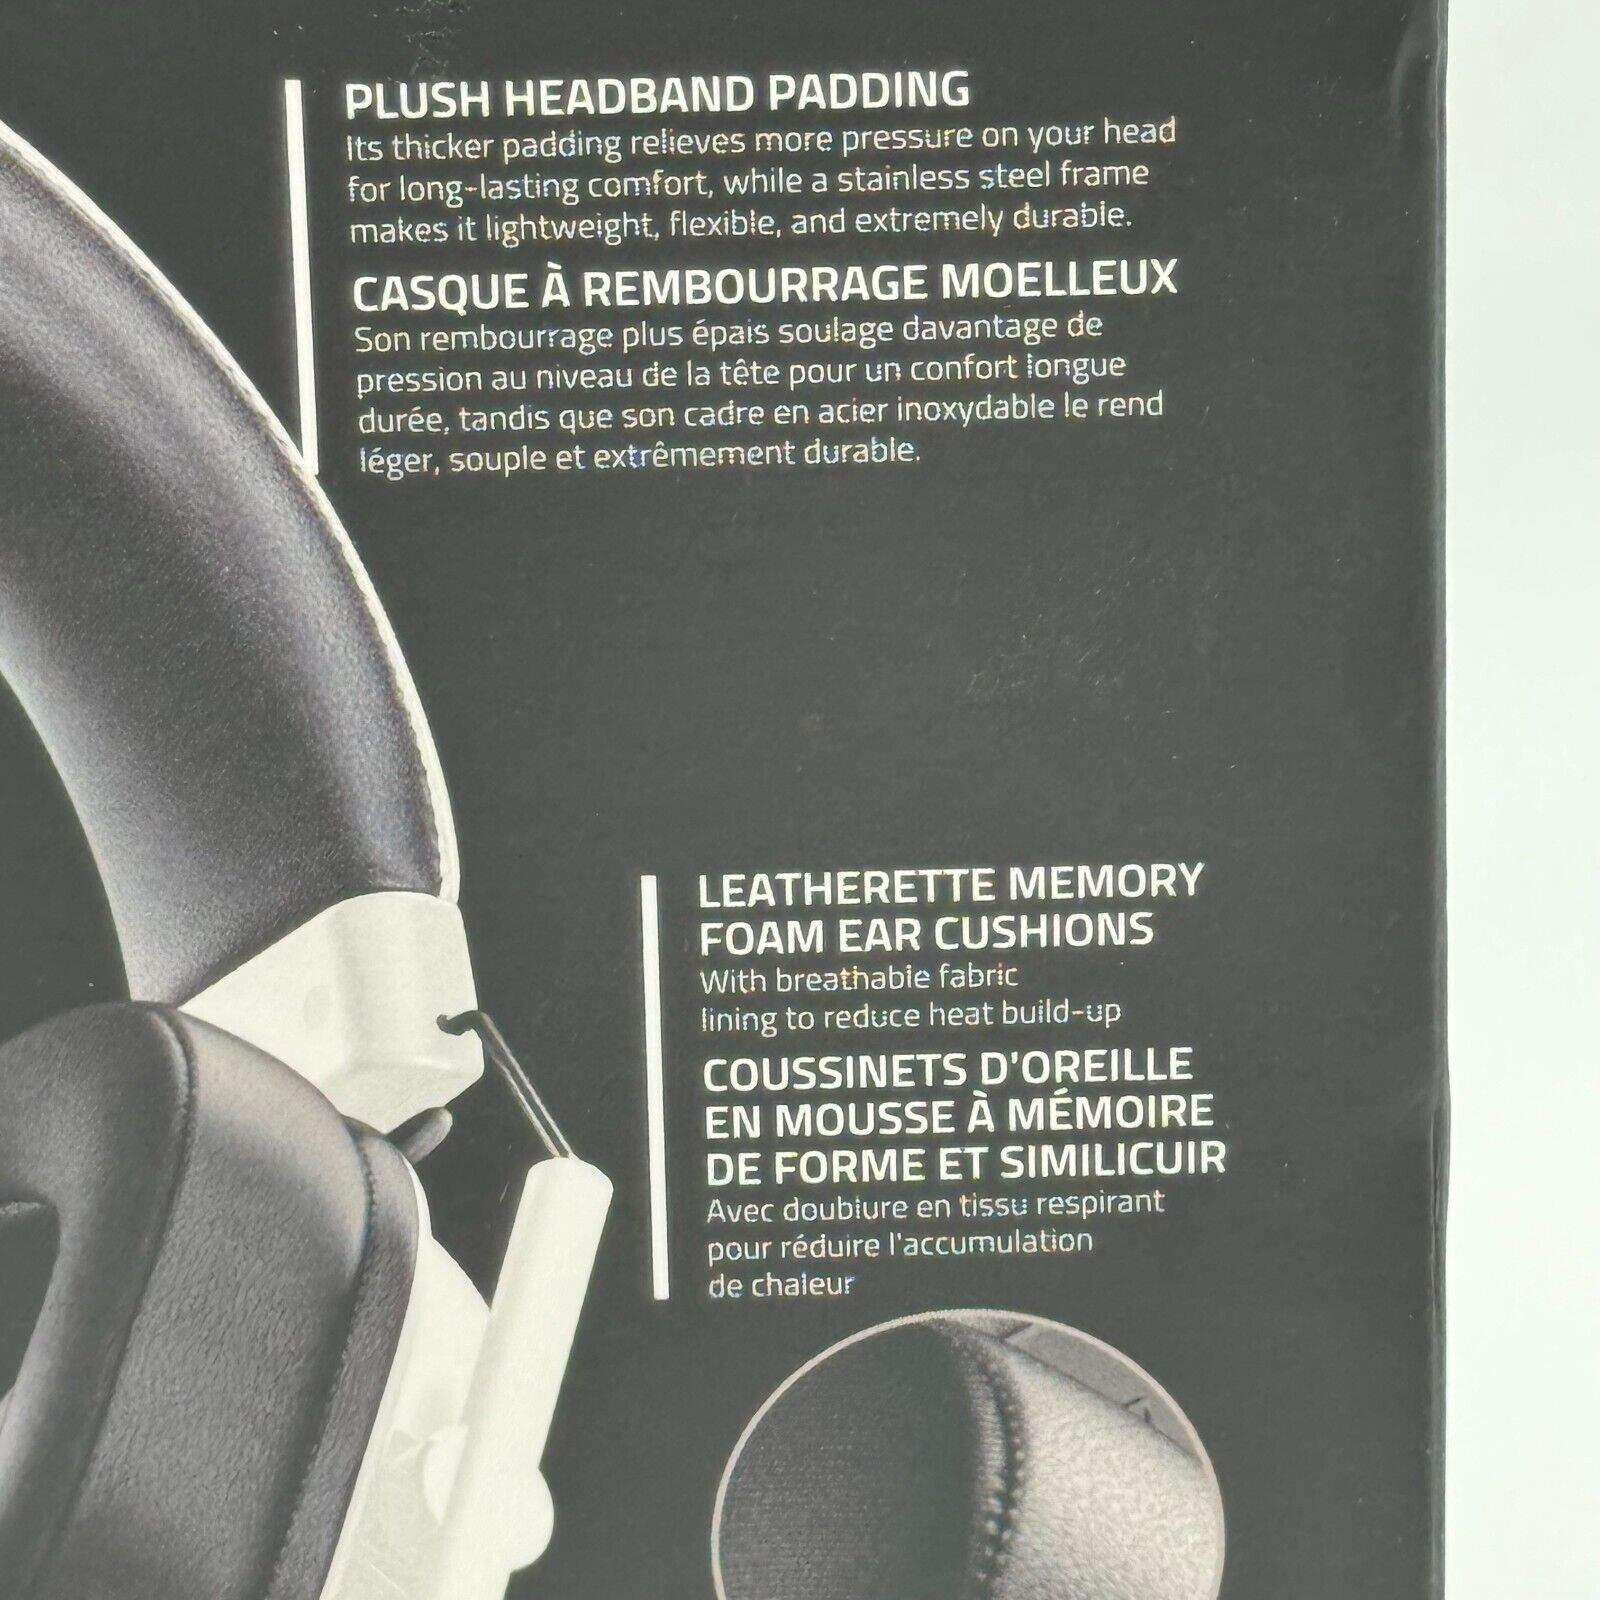 Razer BlackShark V2 X Over the Ear Gaming Headset - White (RZ04-03240700-R3U1)